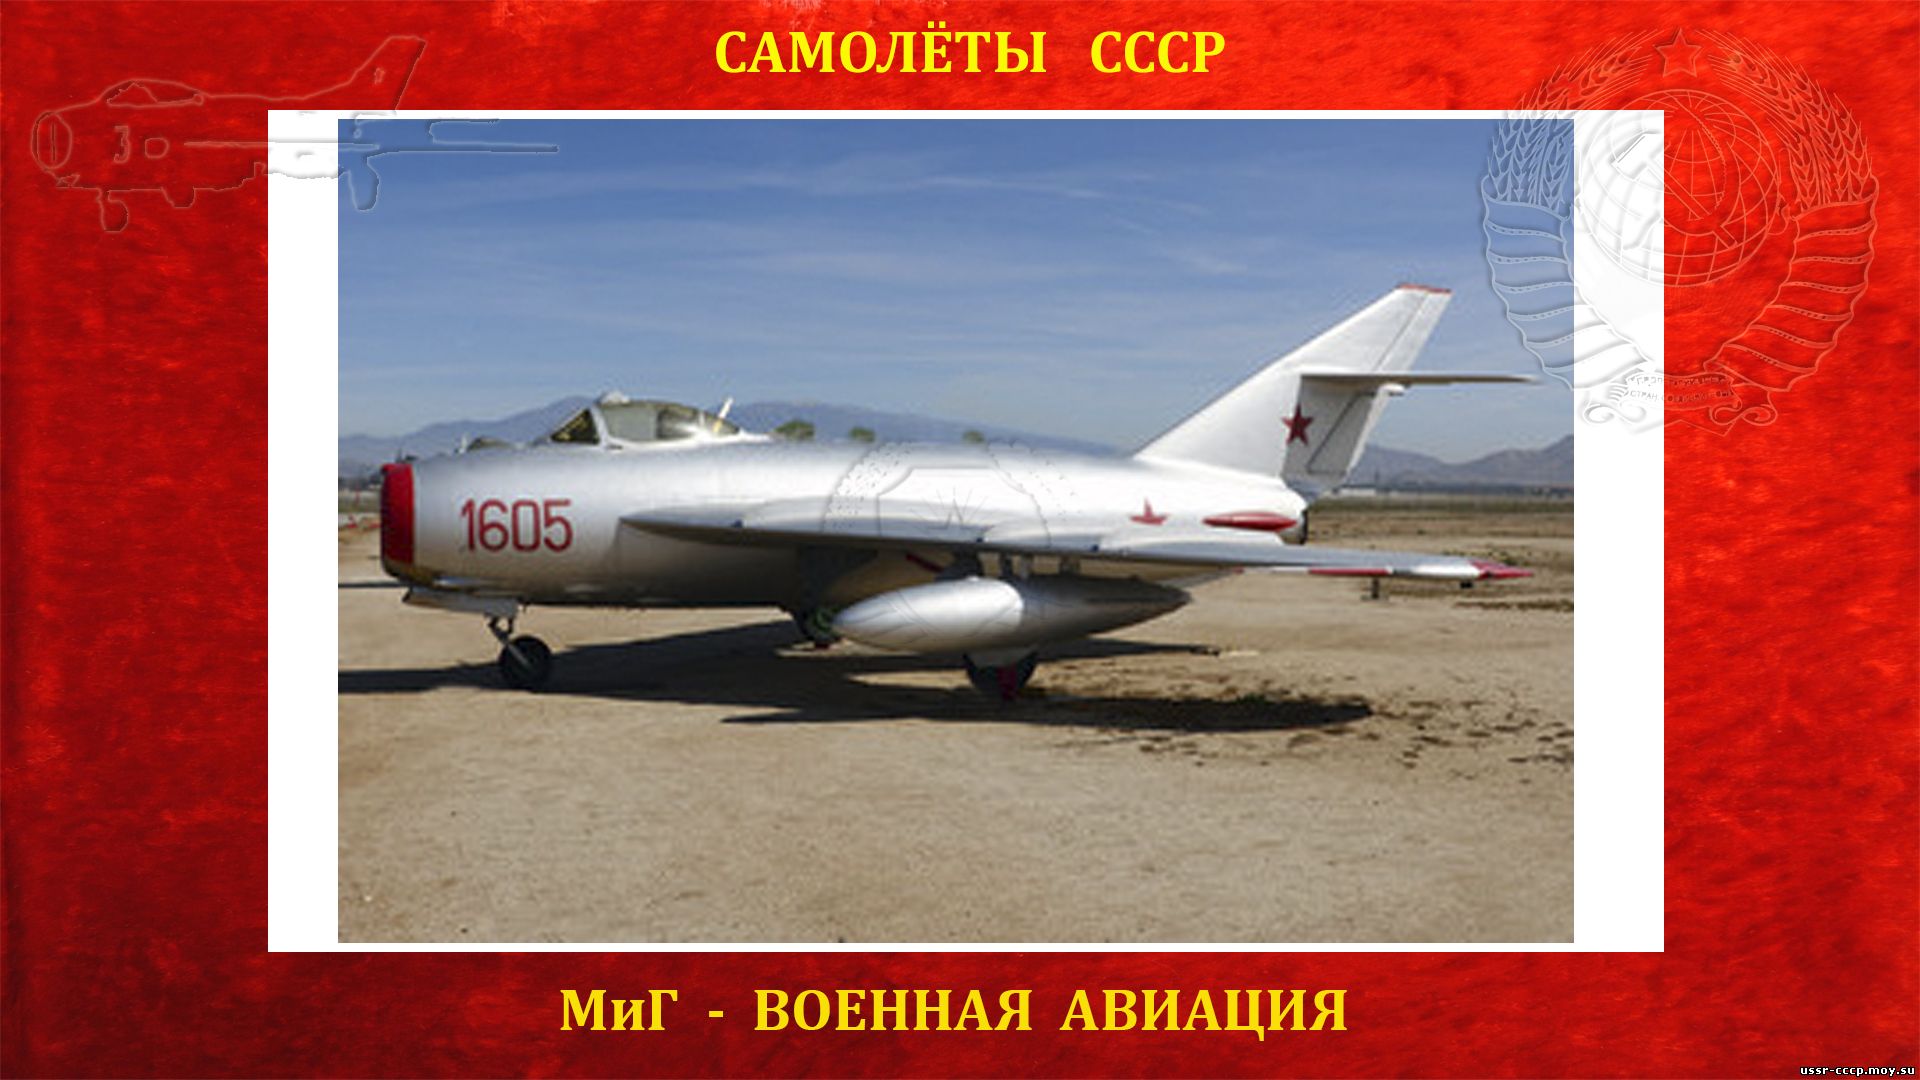 МиГ-17 - Советский реактивный истребитель